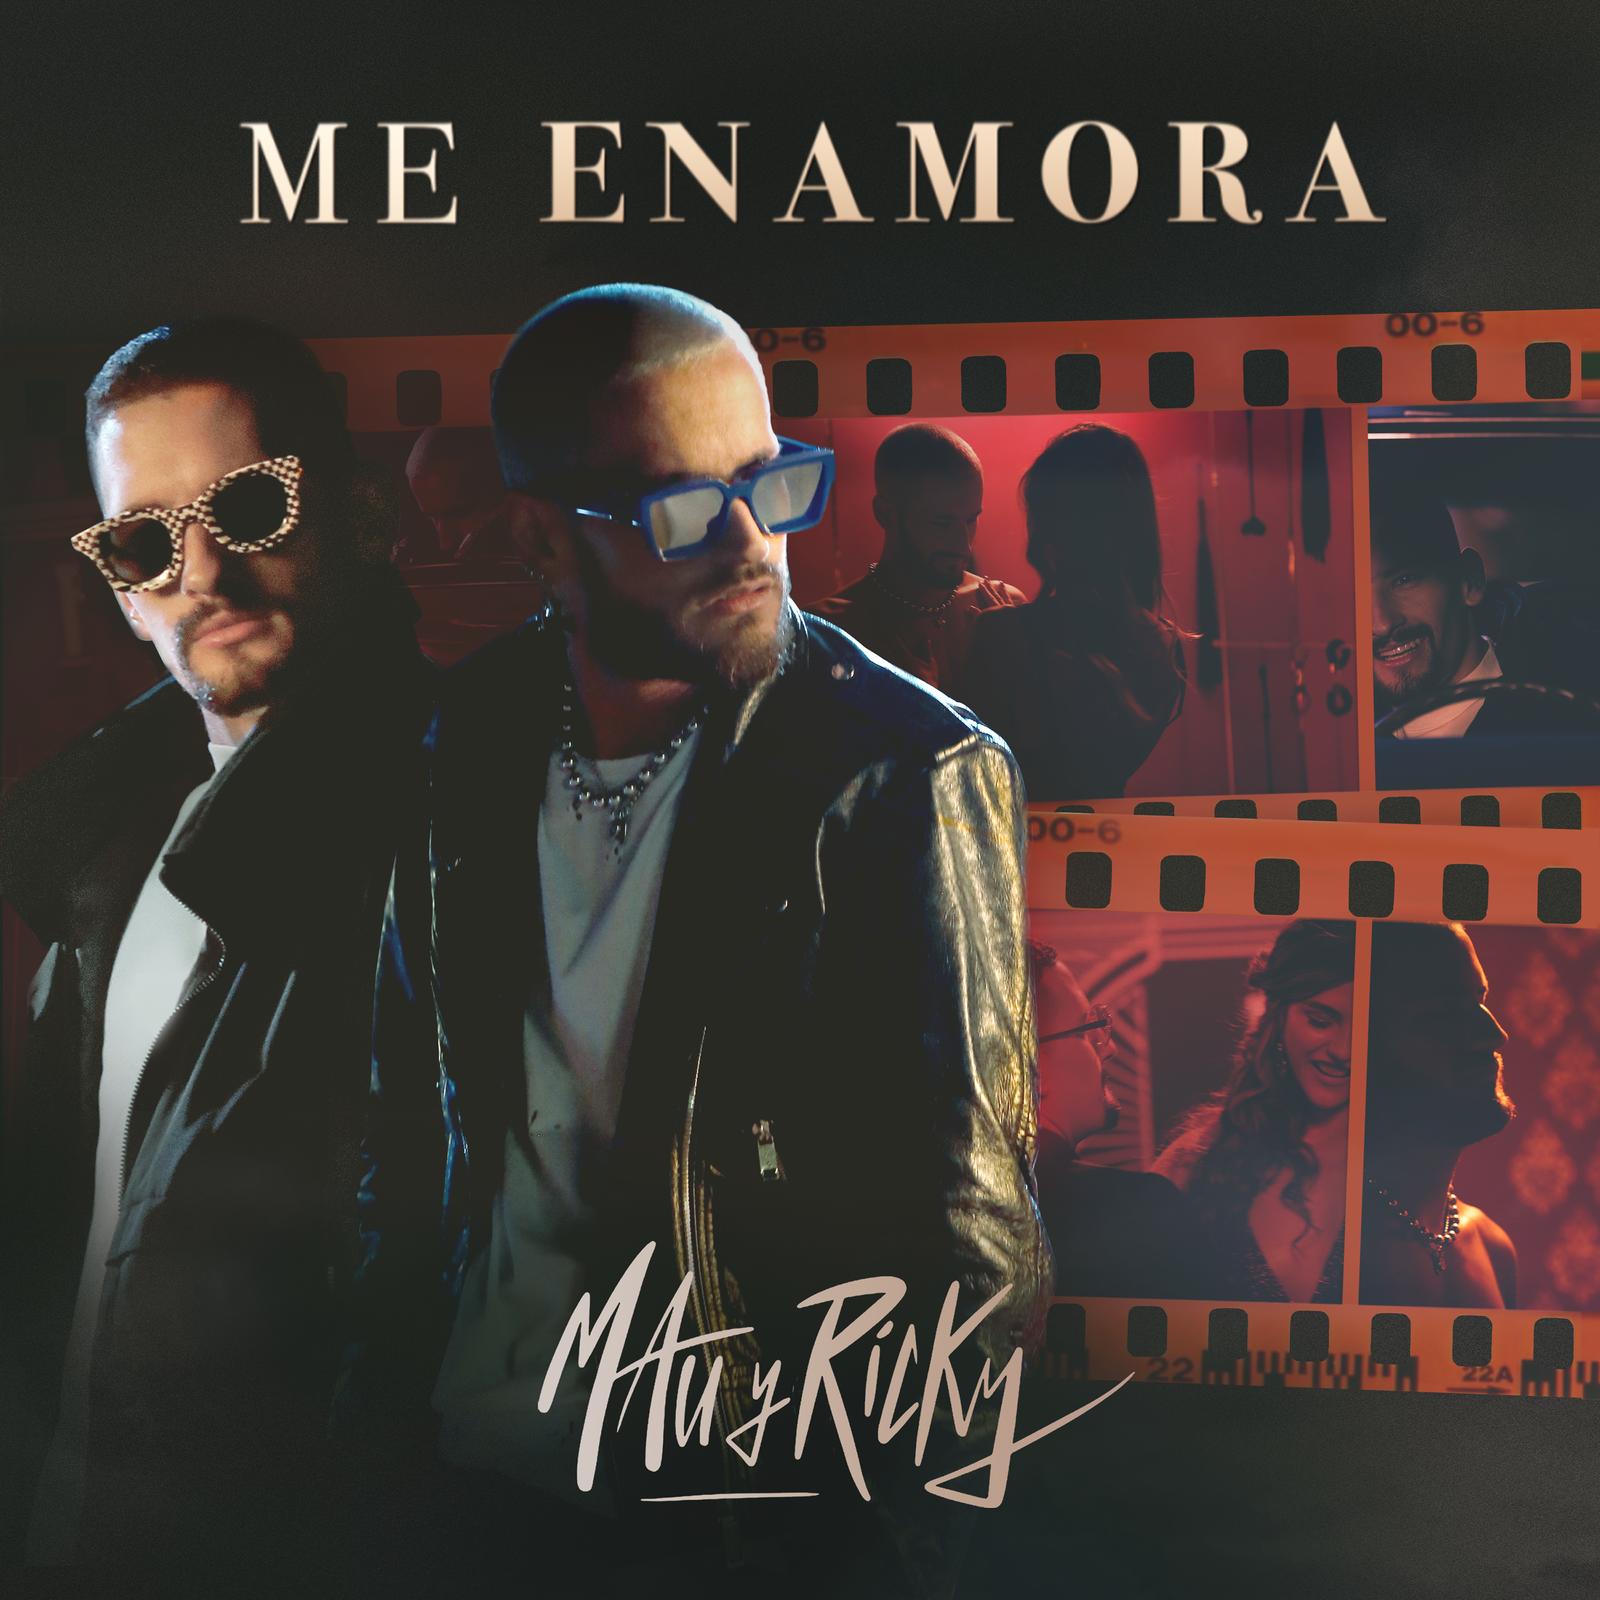 MAU Y RICKY lanzan su nuevo sencillo “ME ENAMORA”